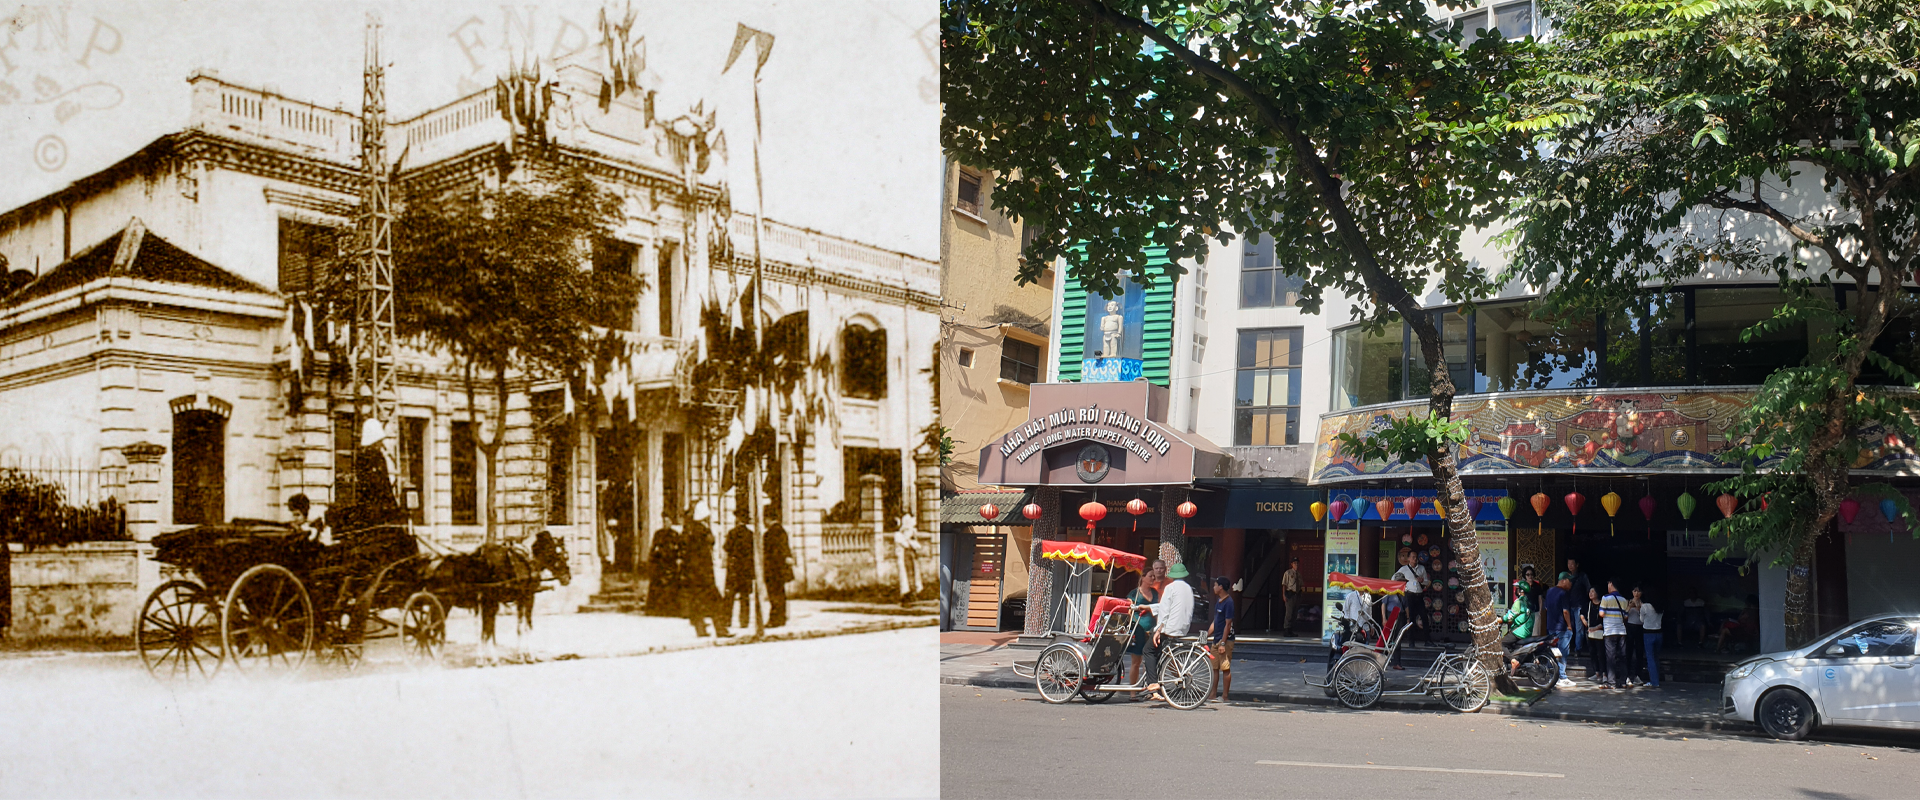 Những hình ảnh thú vị về sự đổi thay của Hà Nội sau 100 năm - Ảnh 13.